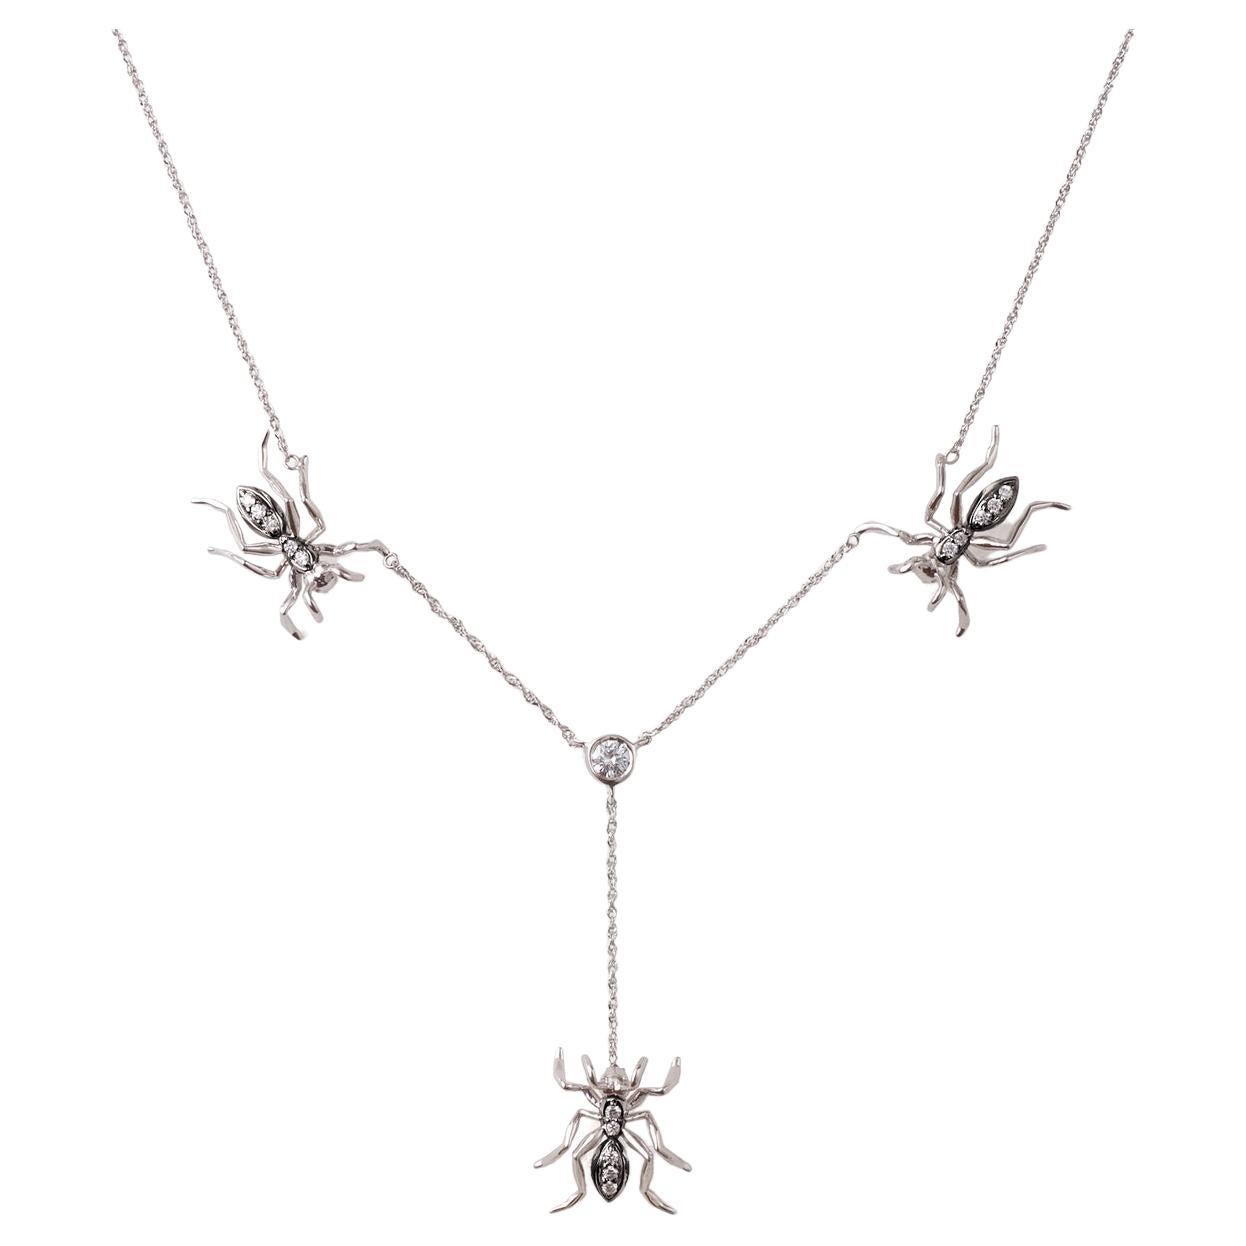 3 Ant Lariat Necklace White Gold Black Rhodium Diamonds